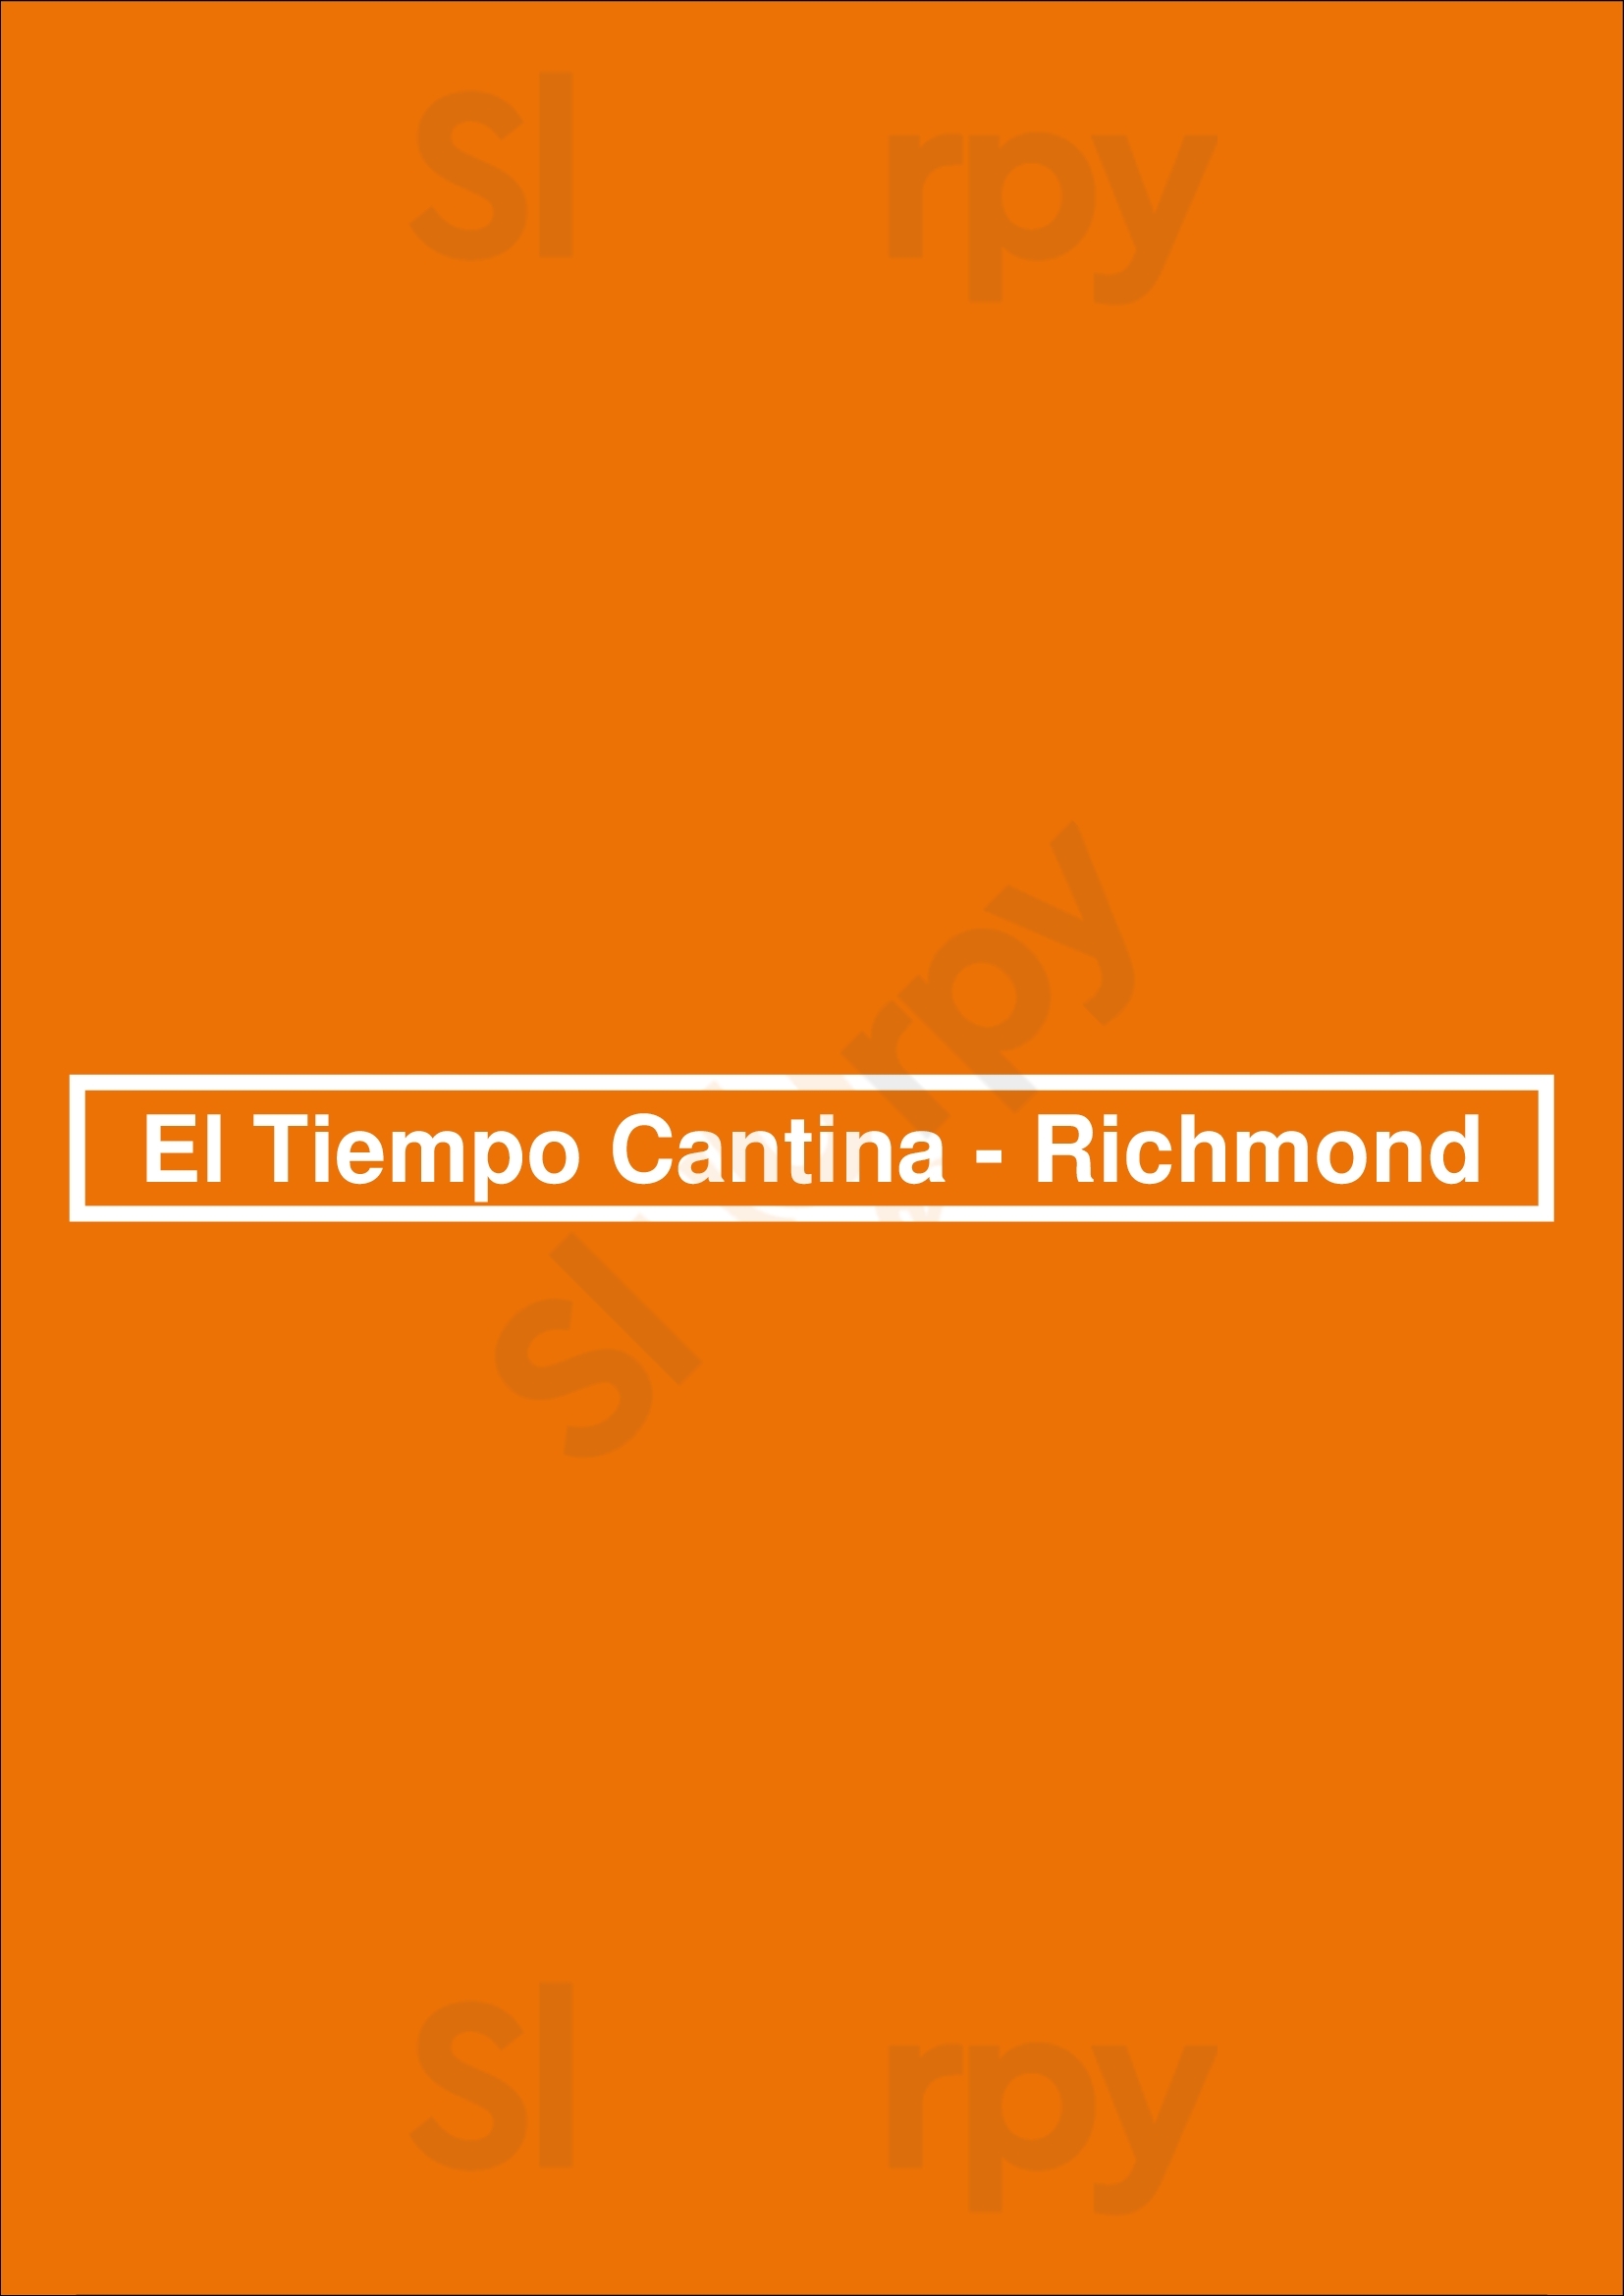 El Tiempo Cantina - Richmond Houston Menu - 1